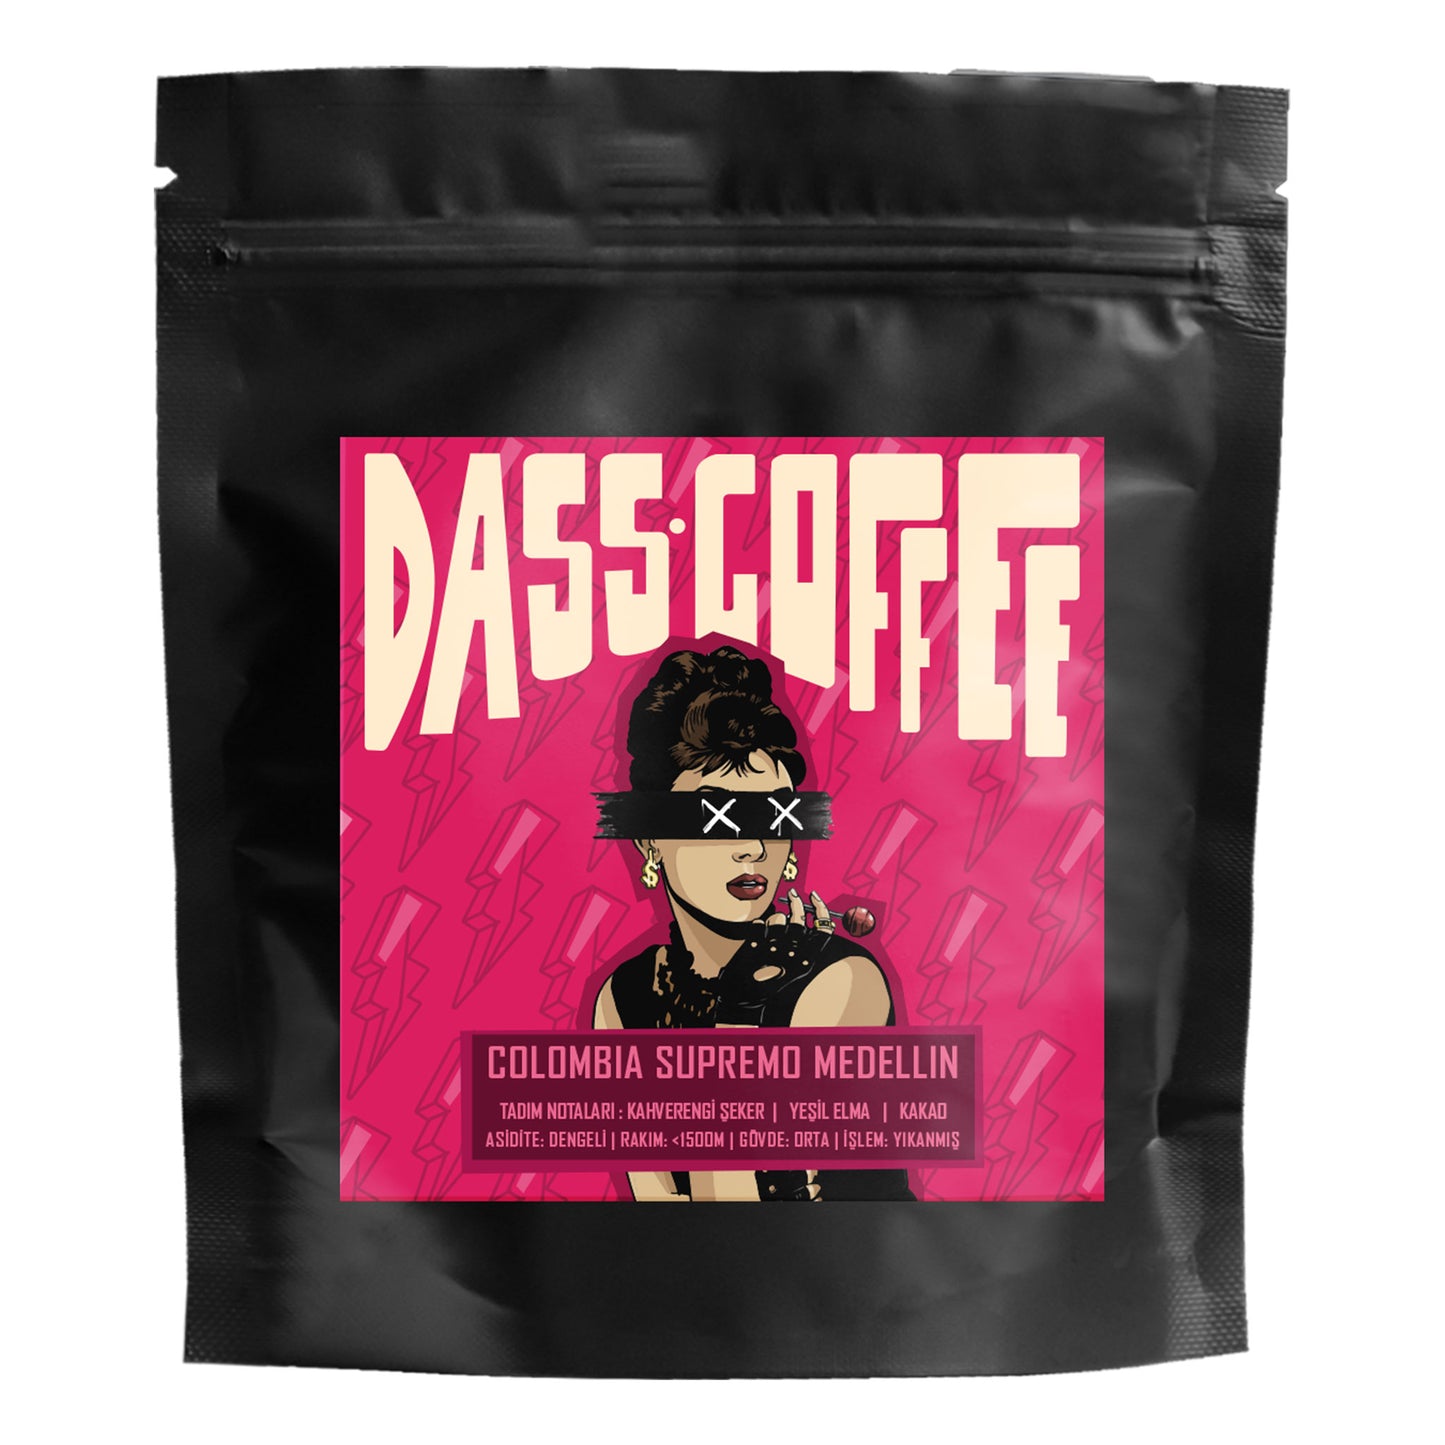 
                  
                    Dass Coffee Yöresel Filtre Kahve Tadım Deneme Seti Kolombiya Supremo Medellin 50gr
                  
                